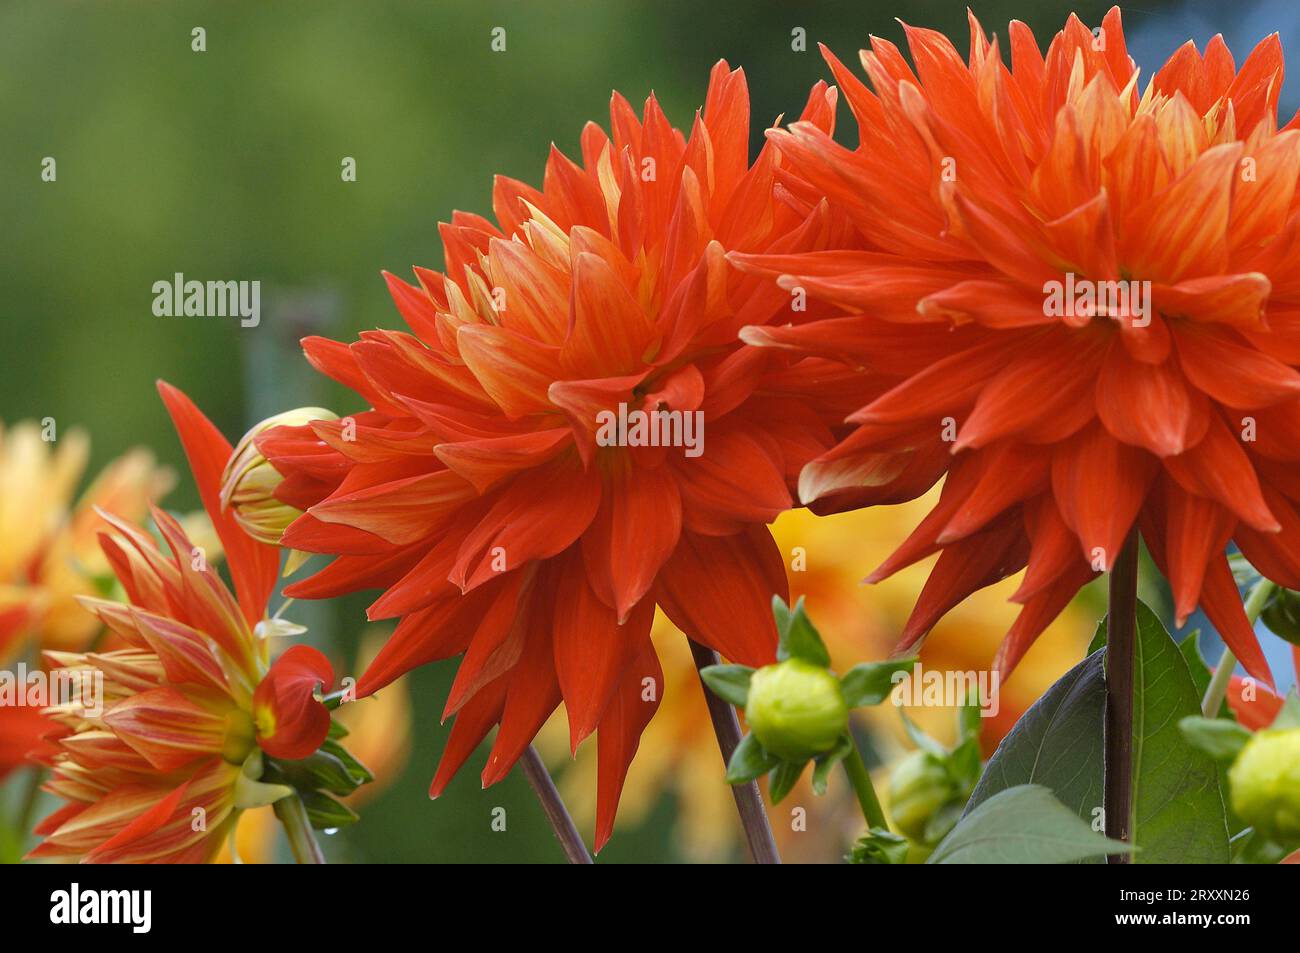 Semicactus Dahlia (Dahlia x cultorum) Stock Photo